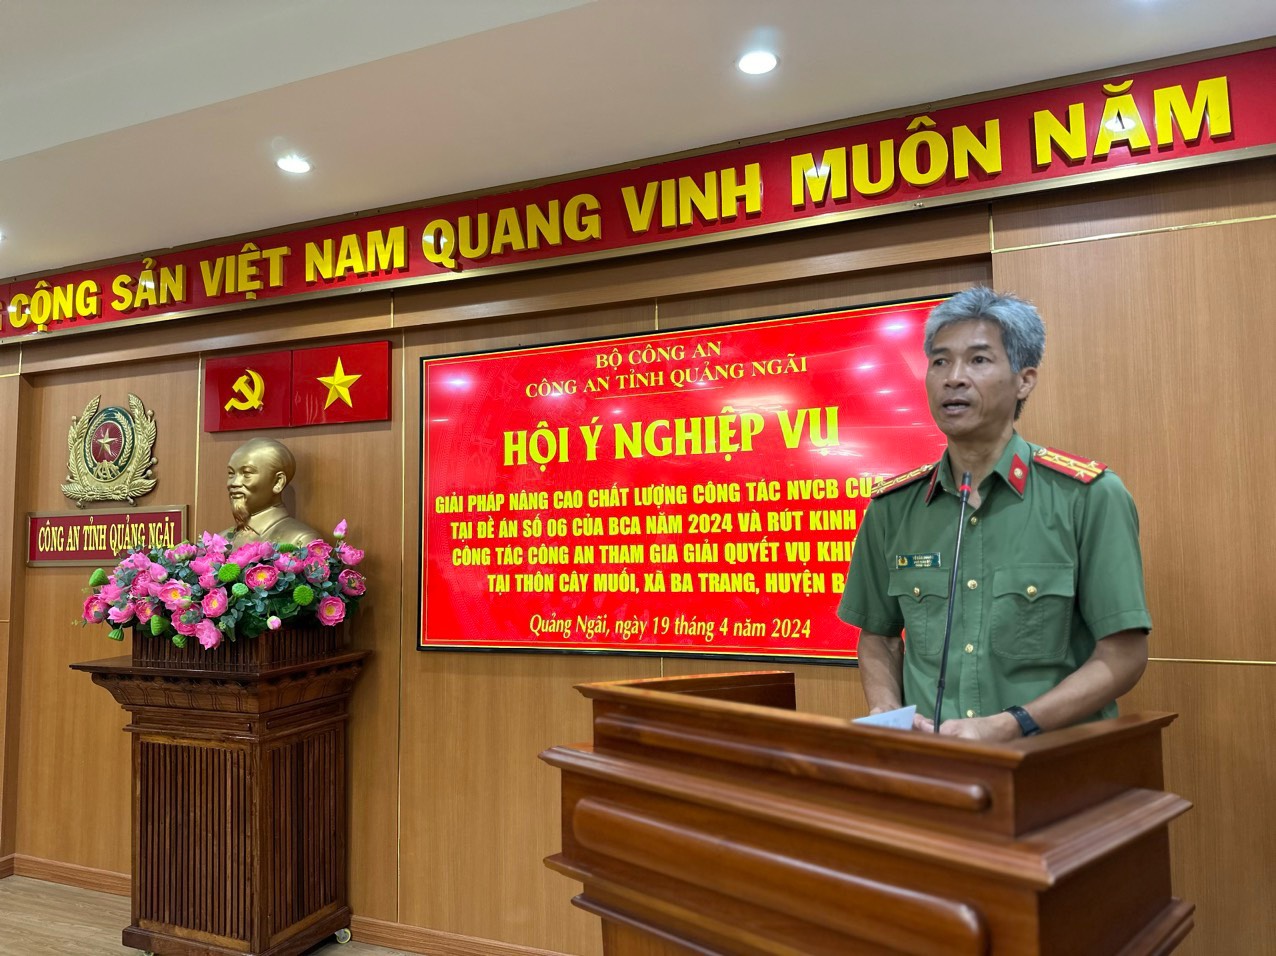 Công an tỉnh Quảng Ngãi tổ chức Hội ý nghiệp vụ nâng cao chất lượng Đề án số 06 của Bộ Công An về công tác NVCB của lực lượng An ninh